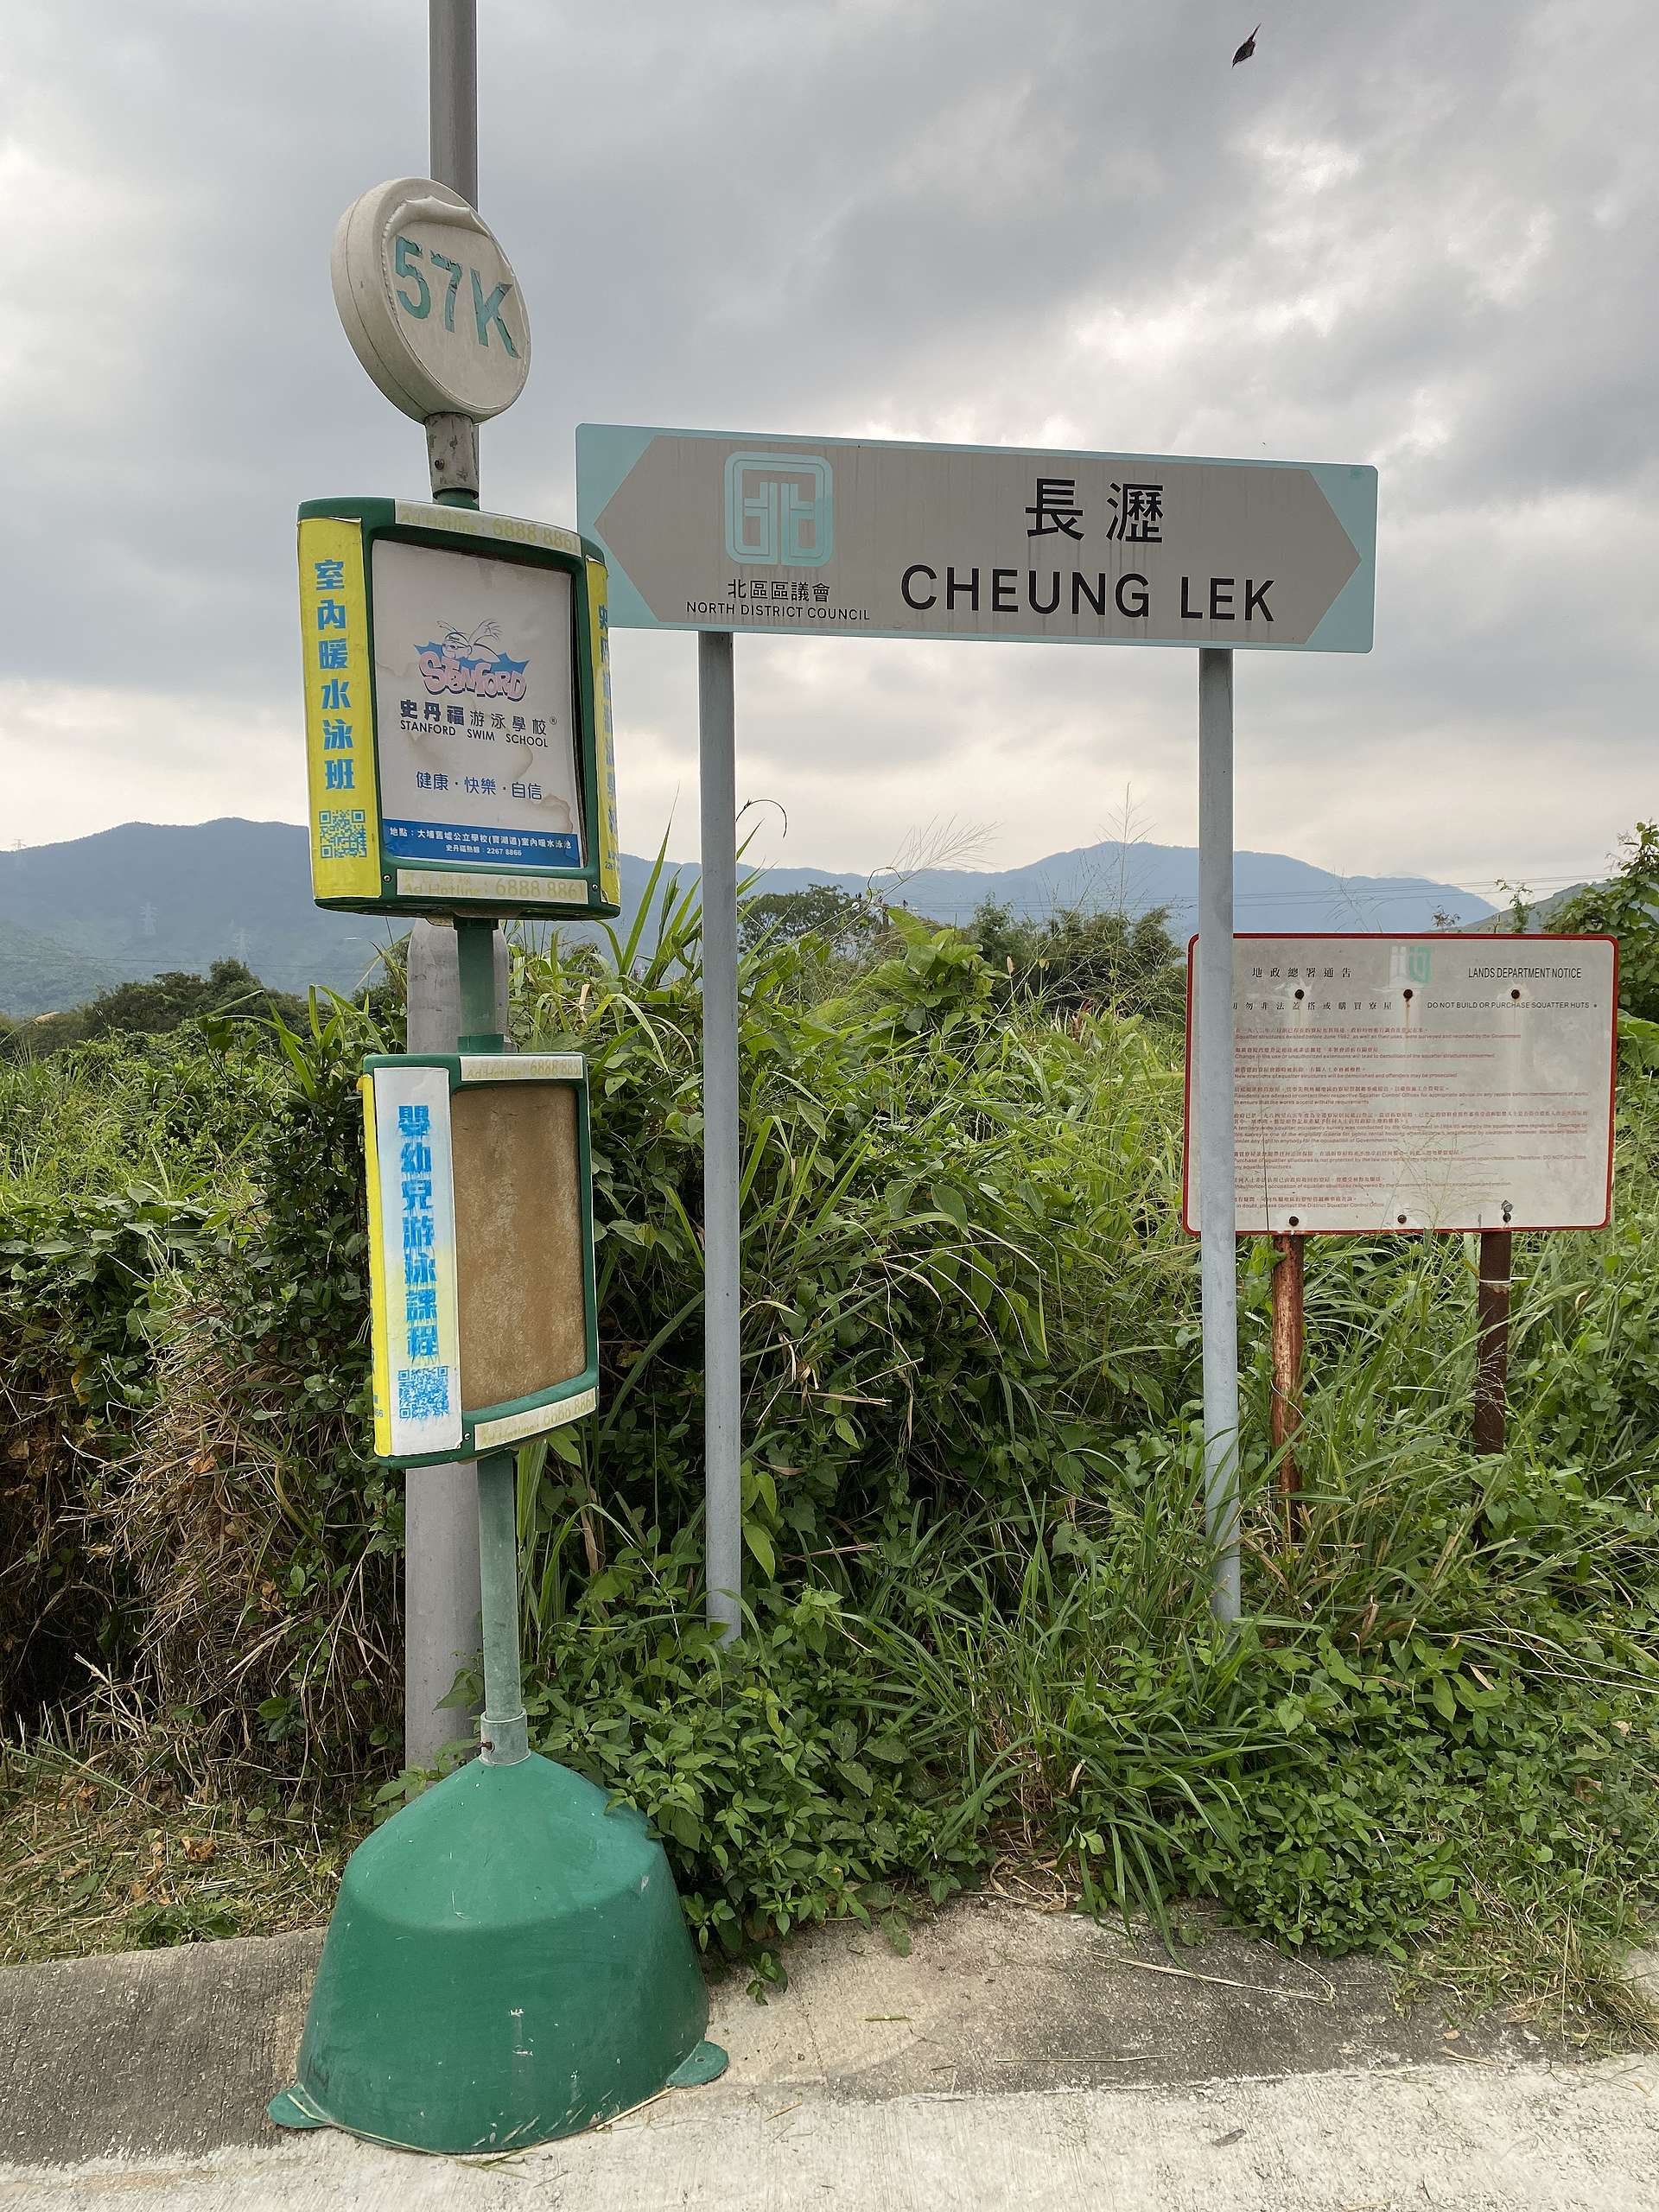 坐小巴記得搭到終站長瀝才下車，google地圖沒有顯示此站。© 香港山女